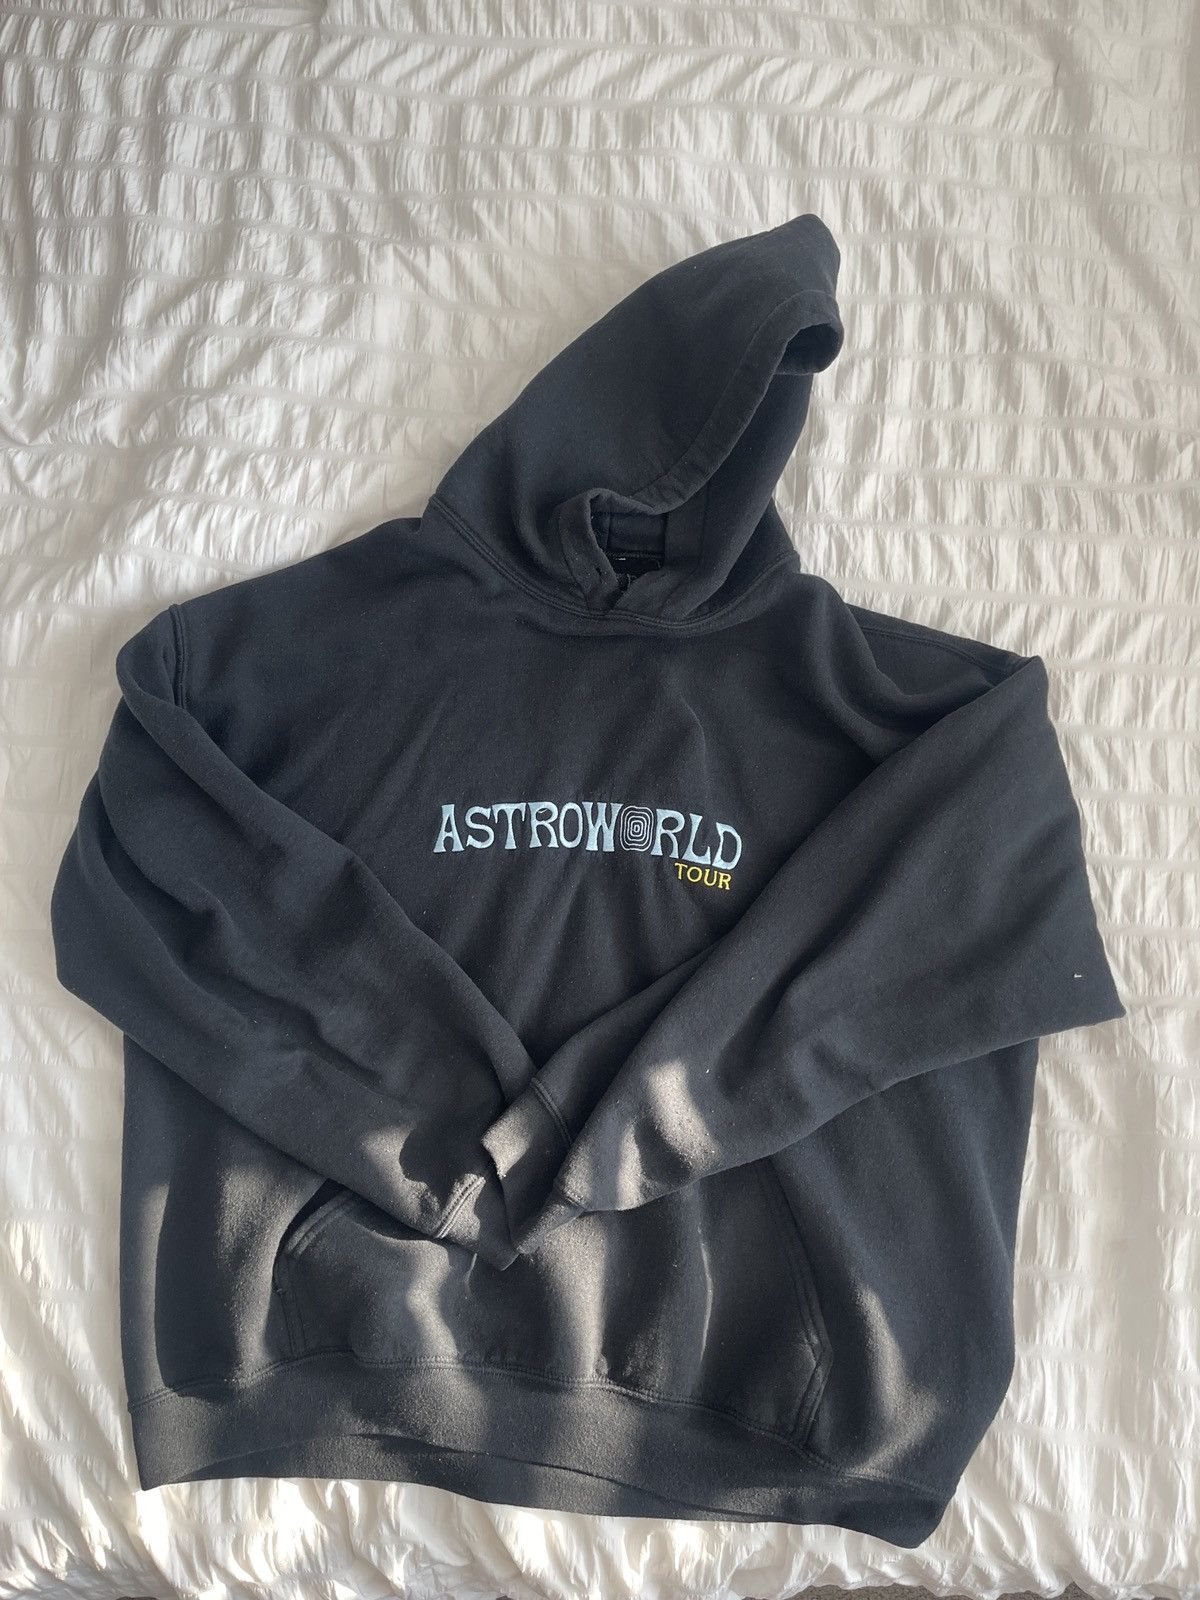 Travis Scott Astroworld tour hoodie | Grailed